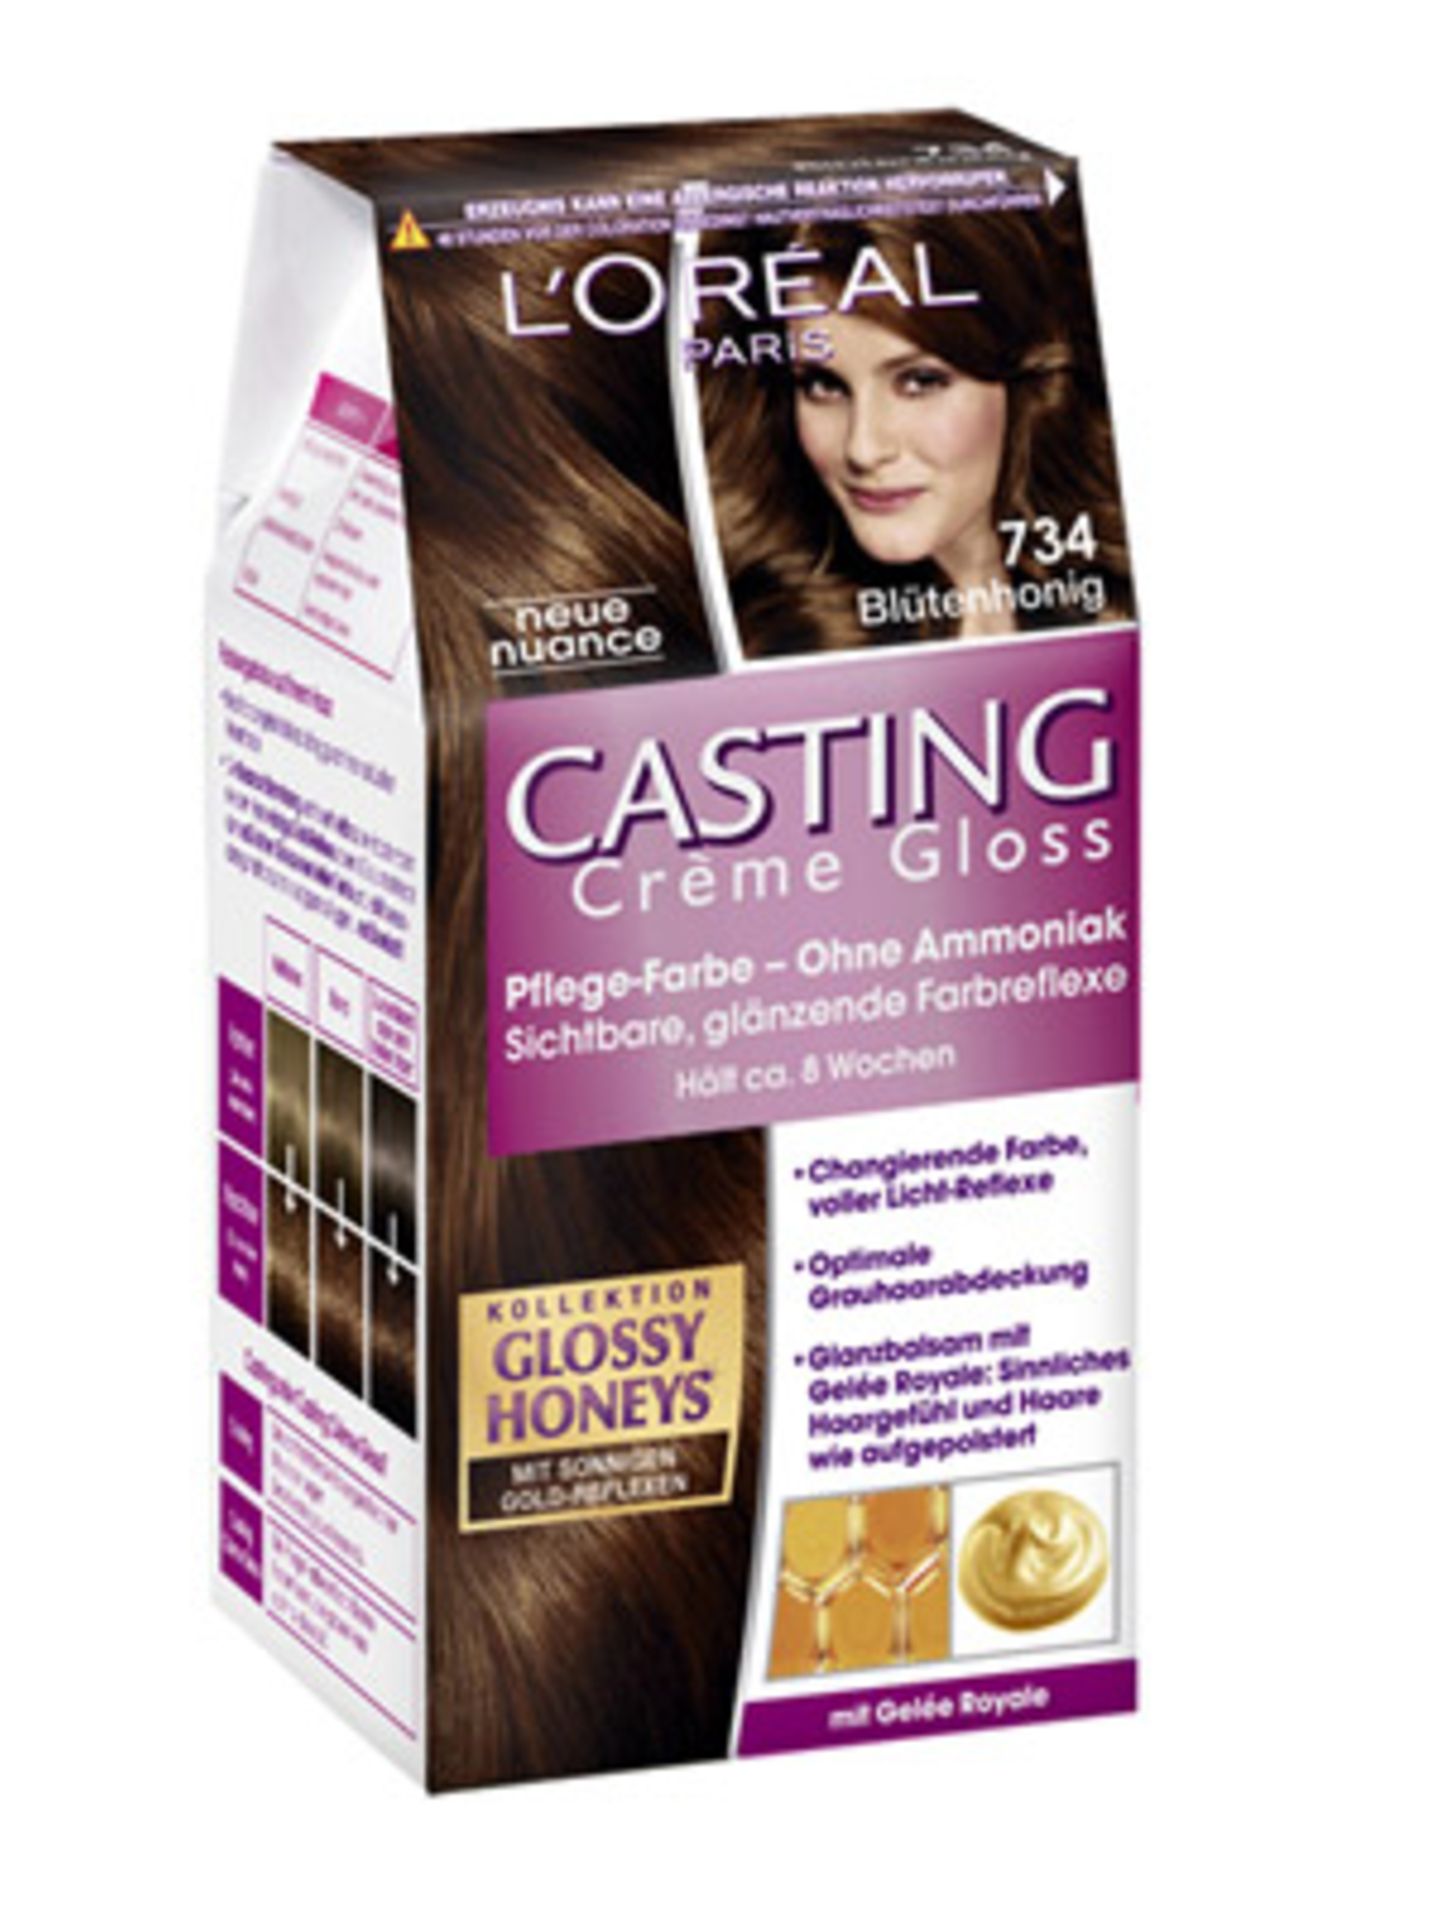 Casting Crème Gloss von L'Oréal mit Honig-Reflexen in der Farbnuance "Blütenhonig". Um 8 Euro.